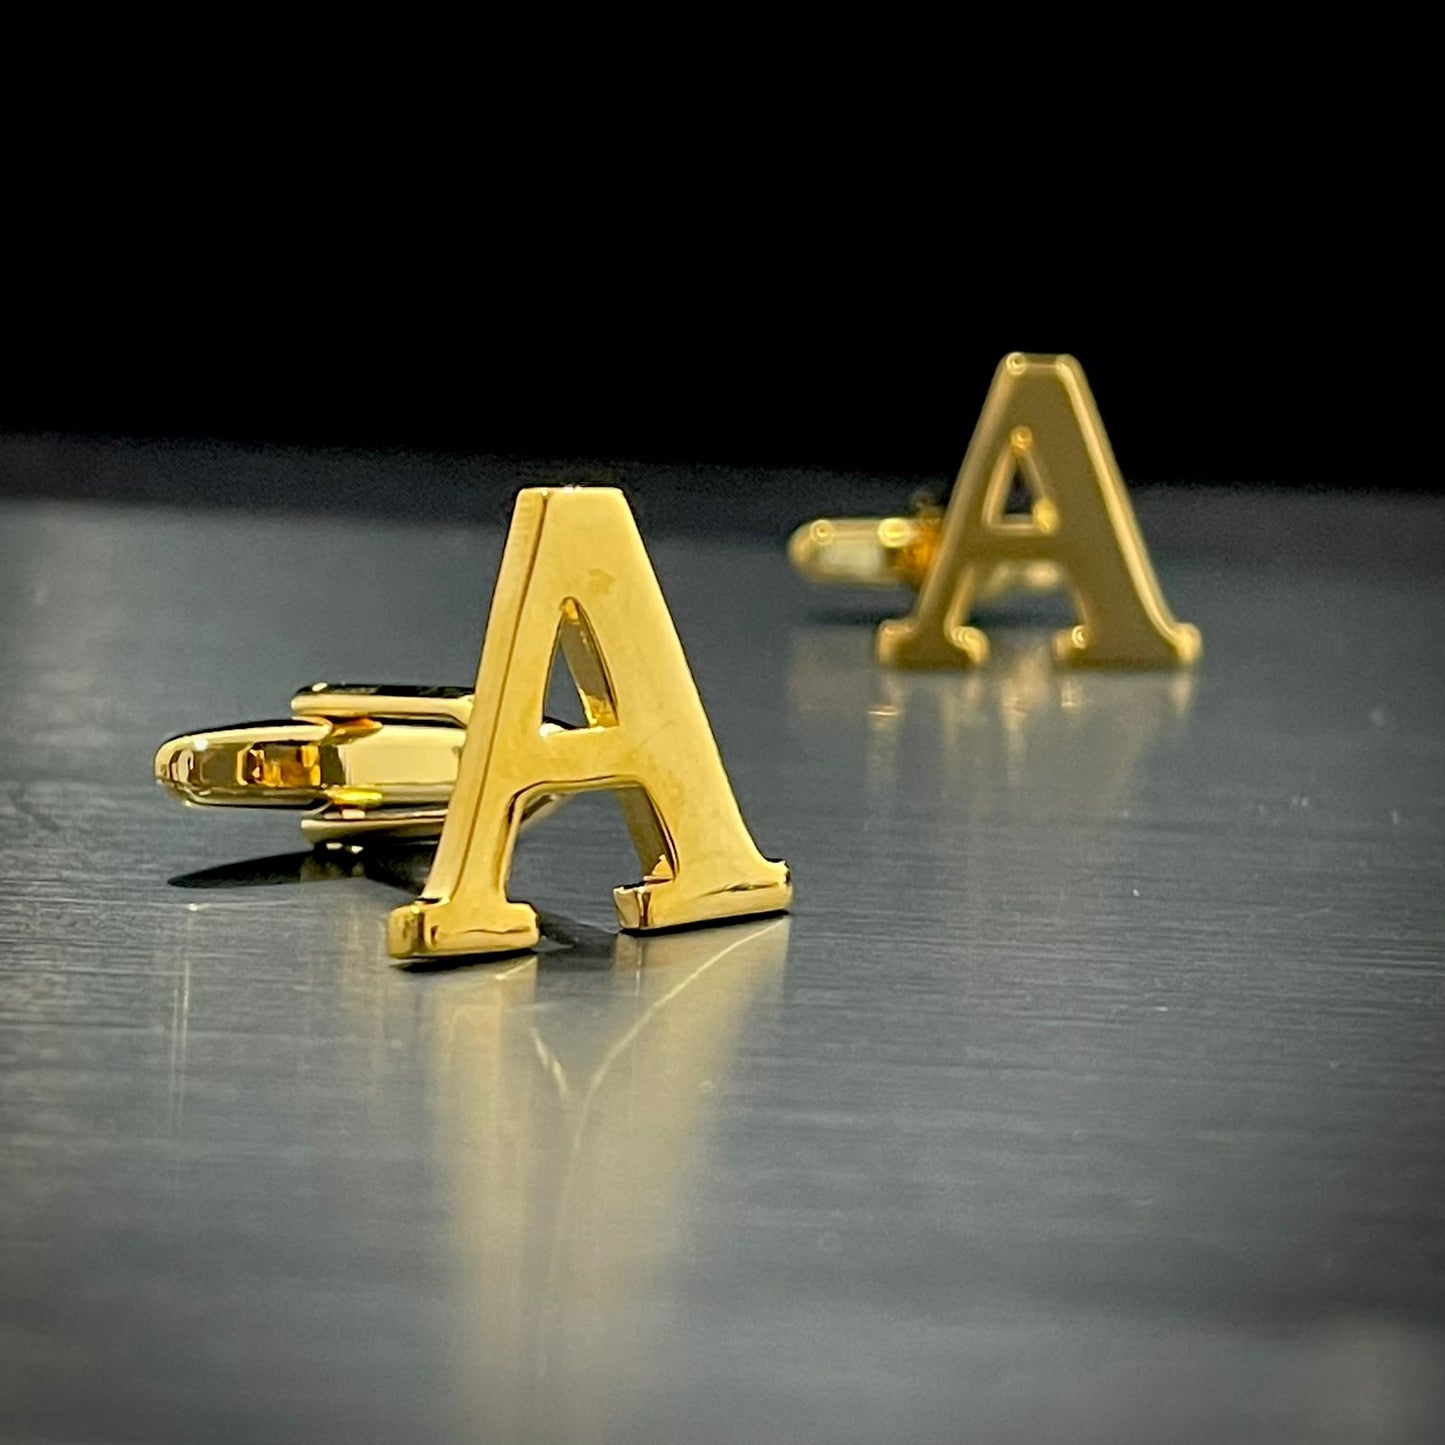 A Letter Alphabet Gold Cufflink